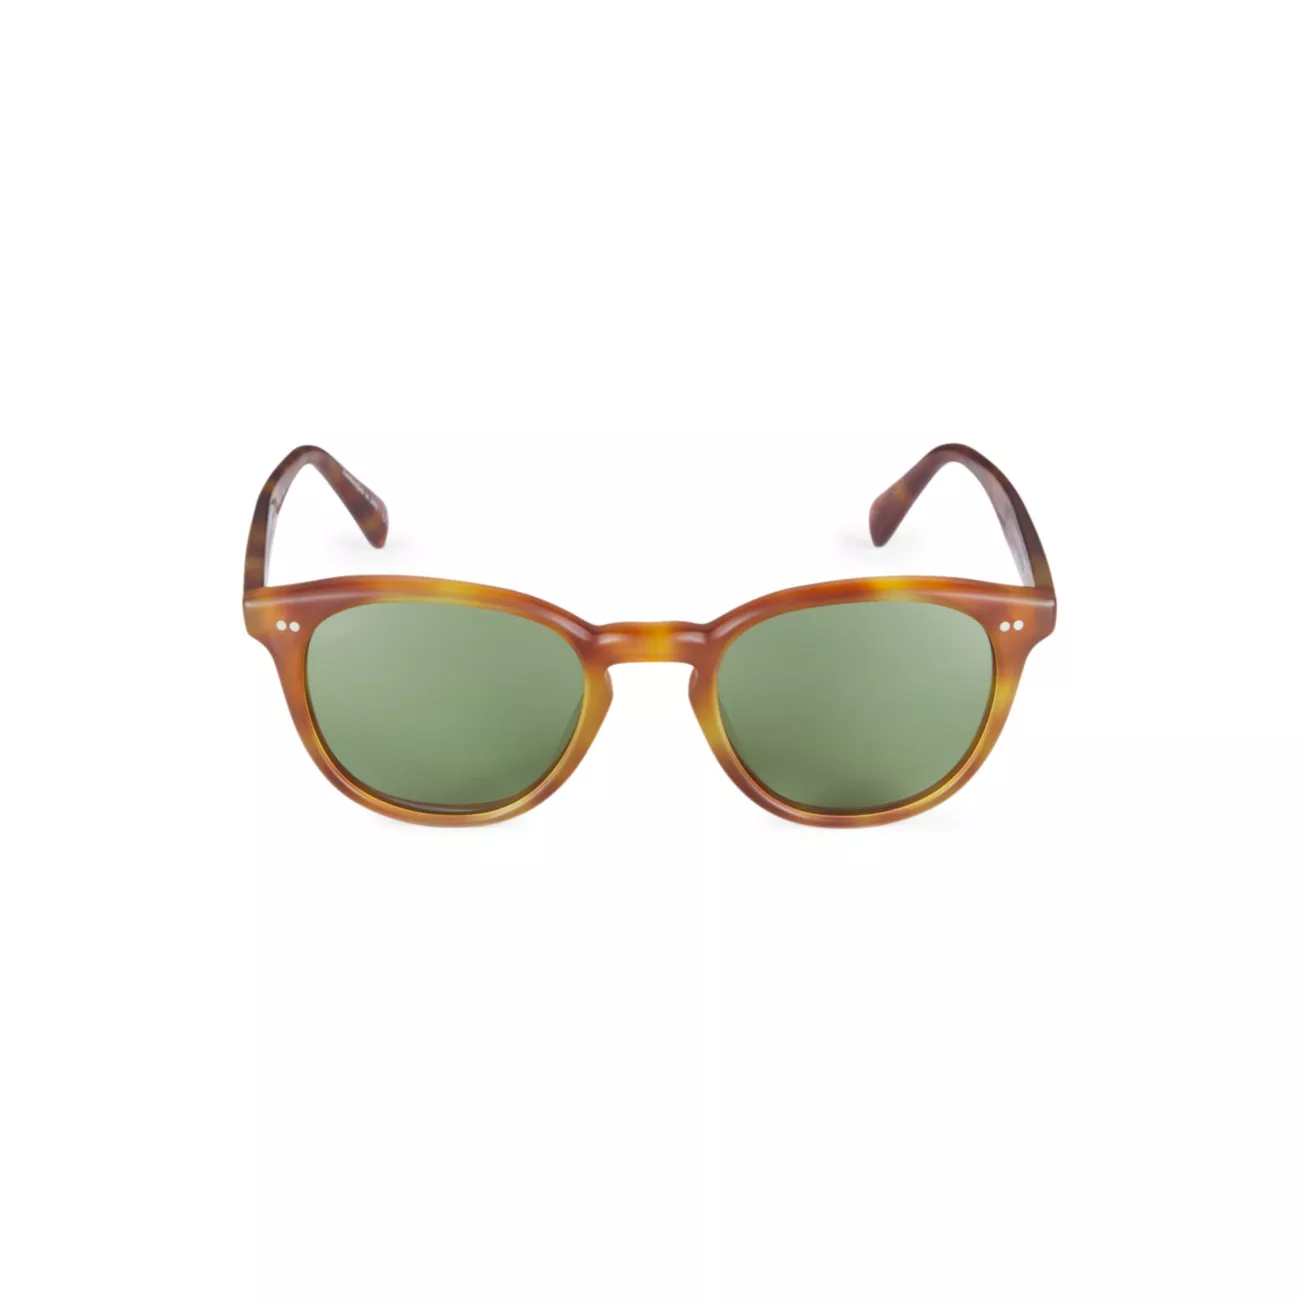 Круглые солнцезащитные очки Desmon Sun 50 мм Oliver Peoples